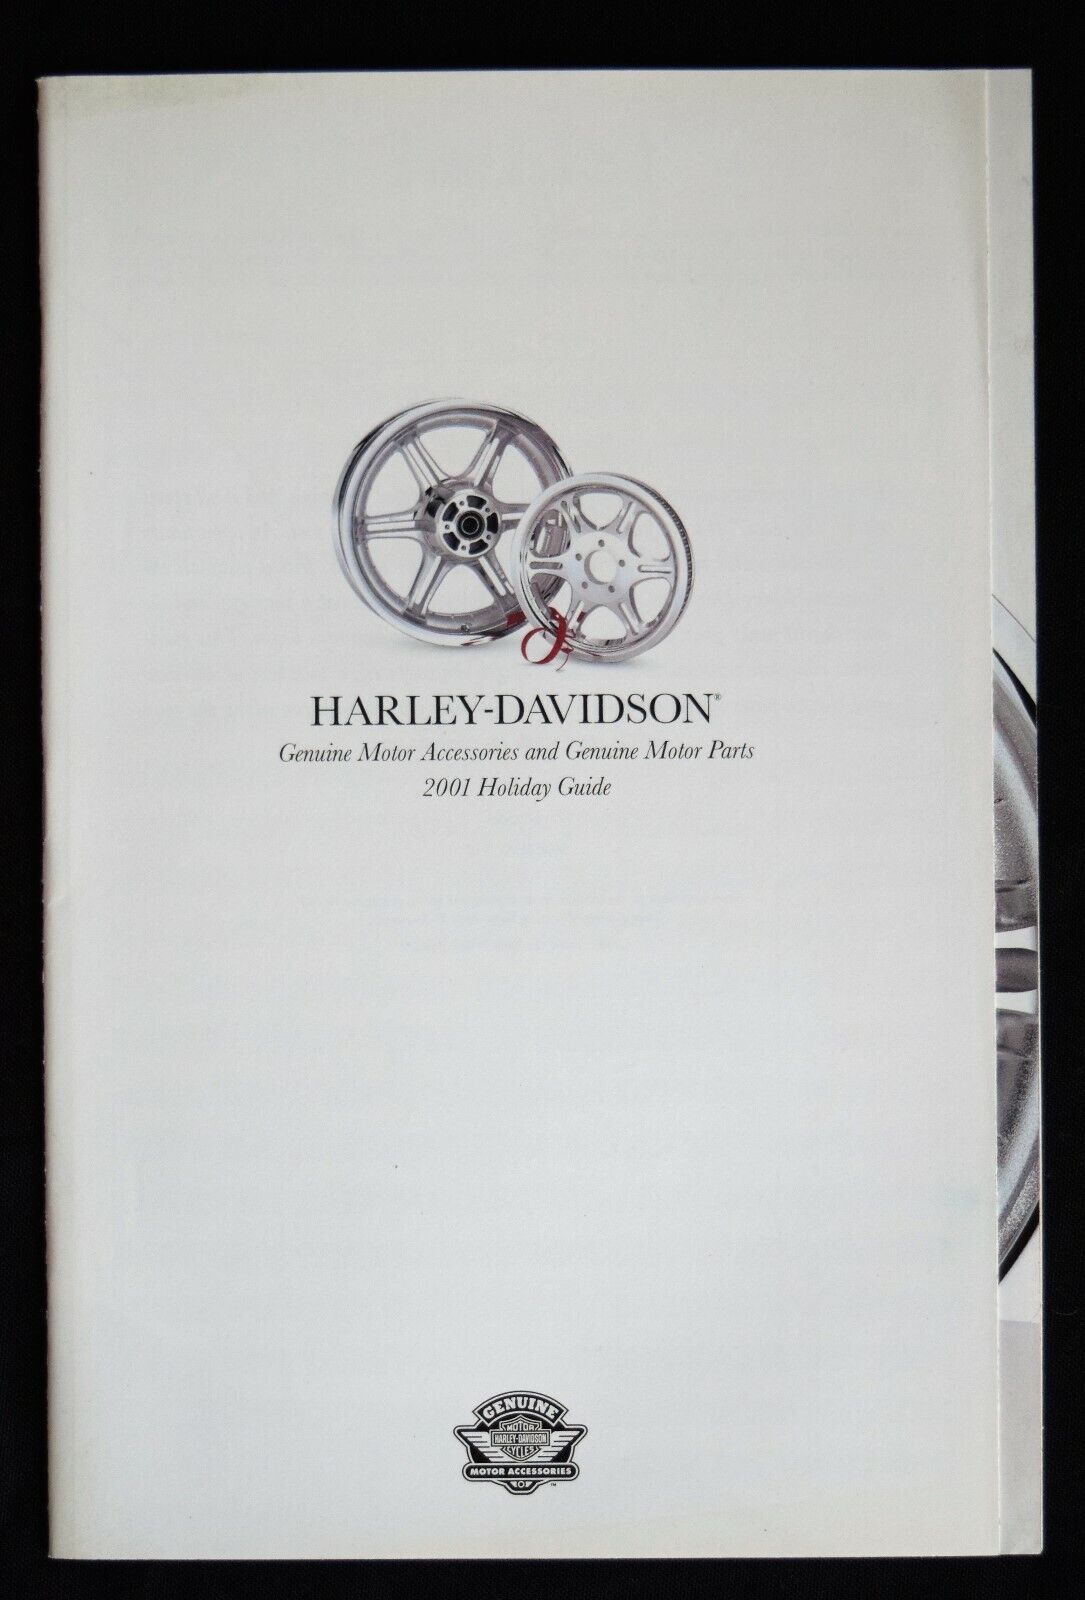 2001 HARLEY-DAVIDSON HOLIDAY GUIDE CATALOG